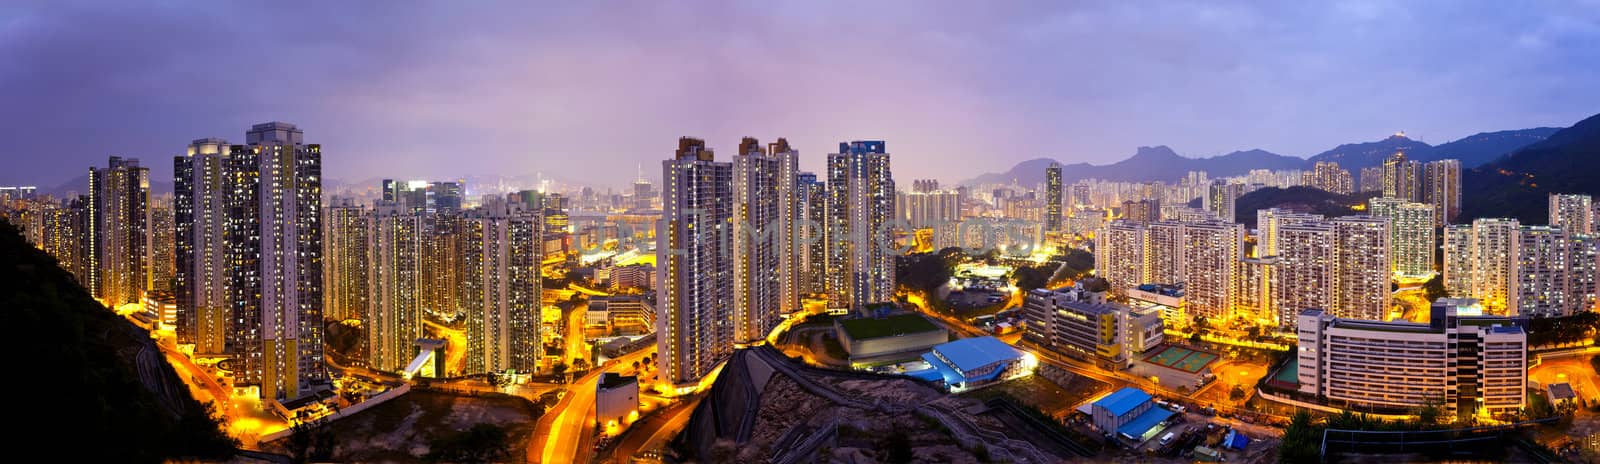 Hong Kong apartments at night, under the Lion Rock Hill.